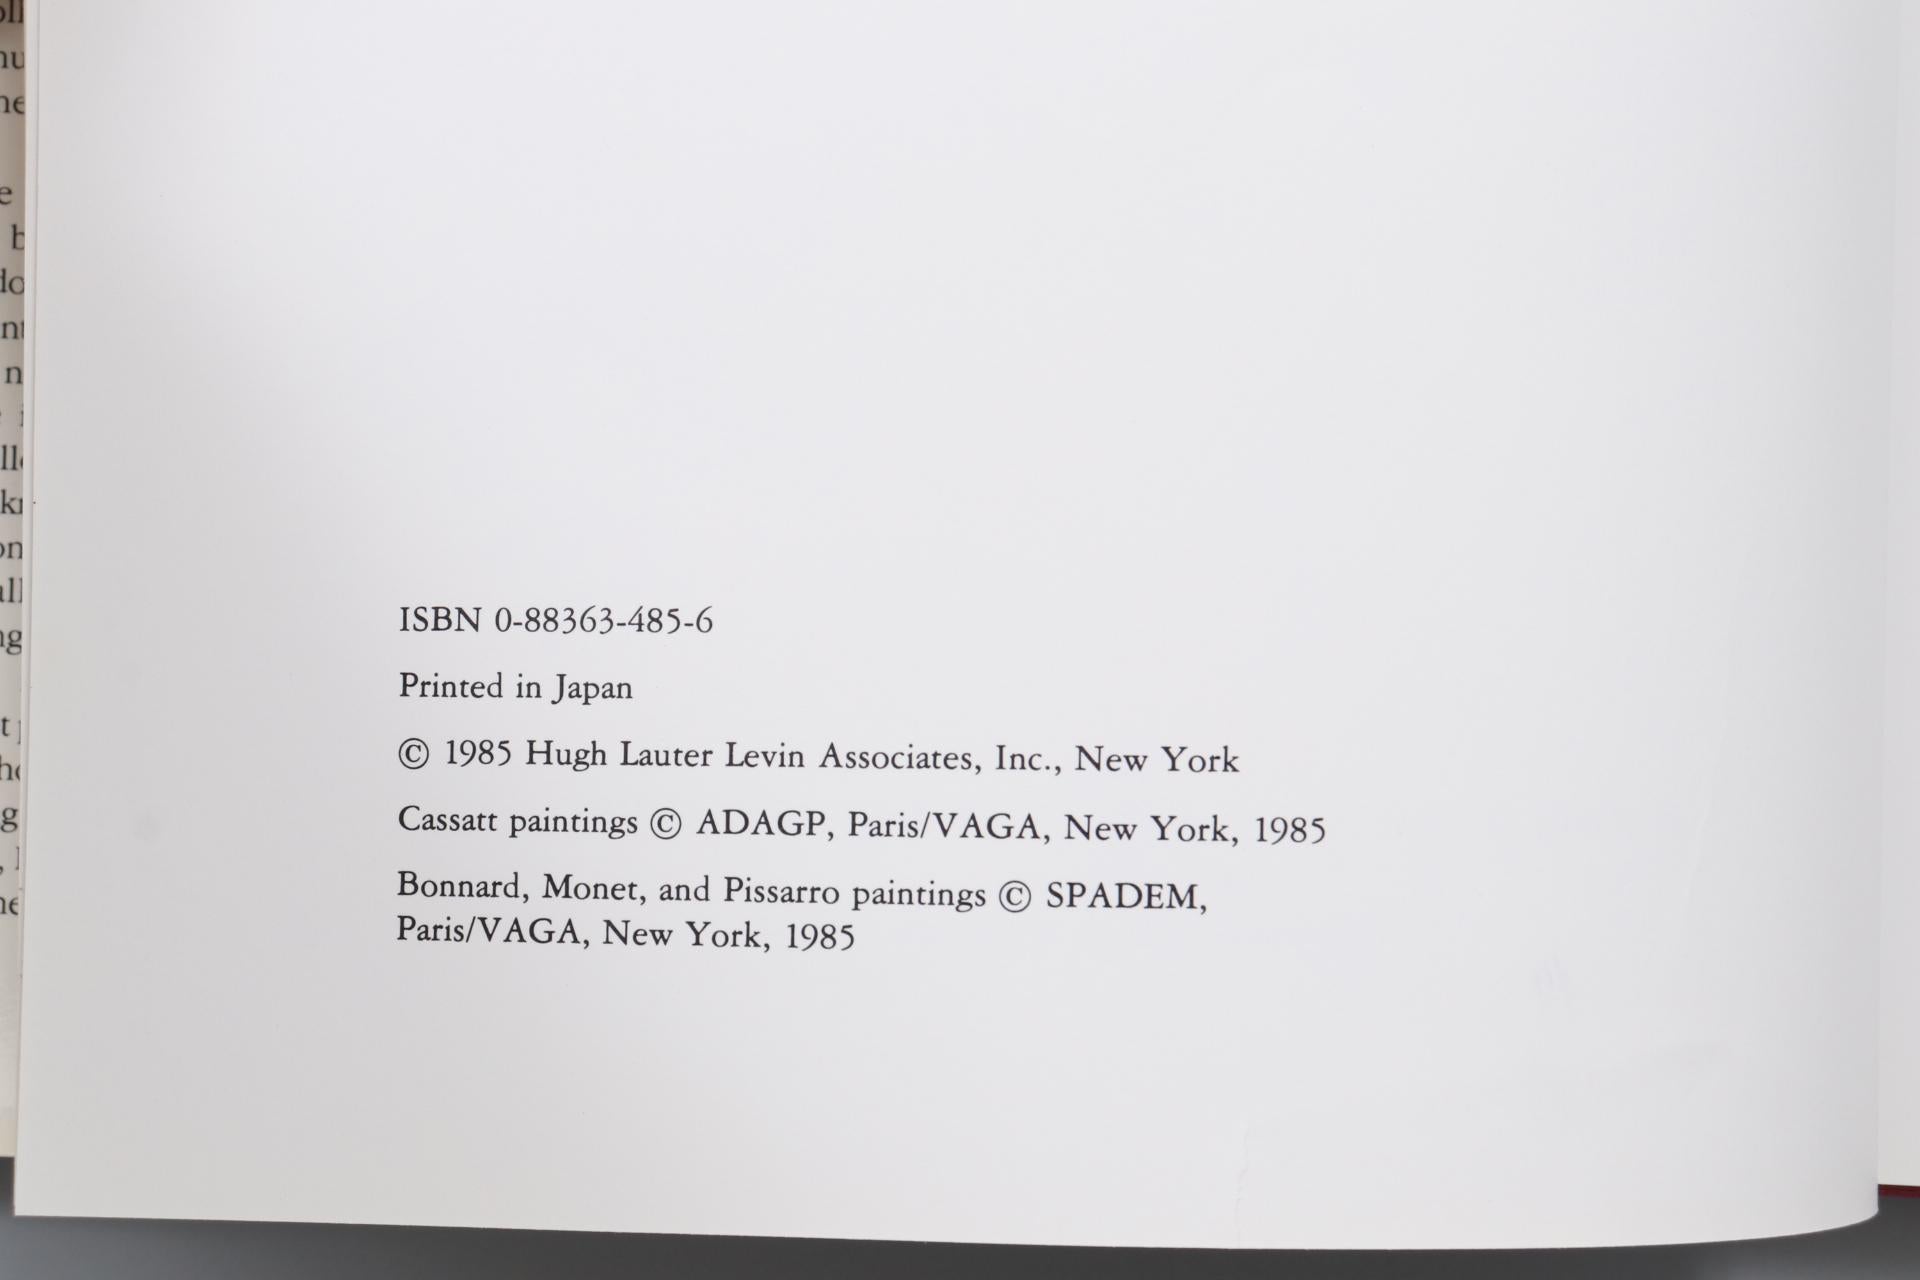 Chefs-d'œuvre impressionnistes, National Gallery of Art, Washington par John House. Livre relié avec jaquette. Première édition, publiée en 1985 par Hugh Lauter Levin Associates, Inc. de New York. Imprimé au Japon. Illustré, 128 pages.